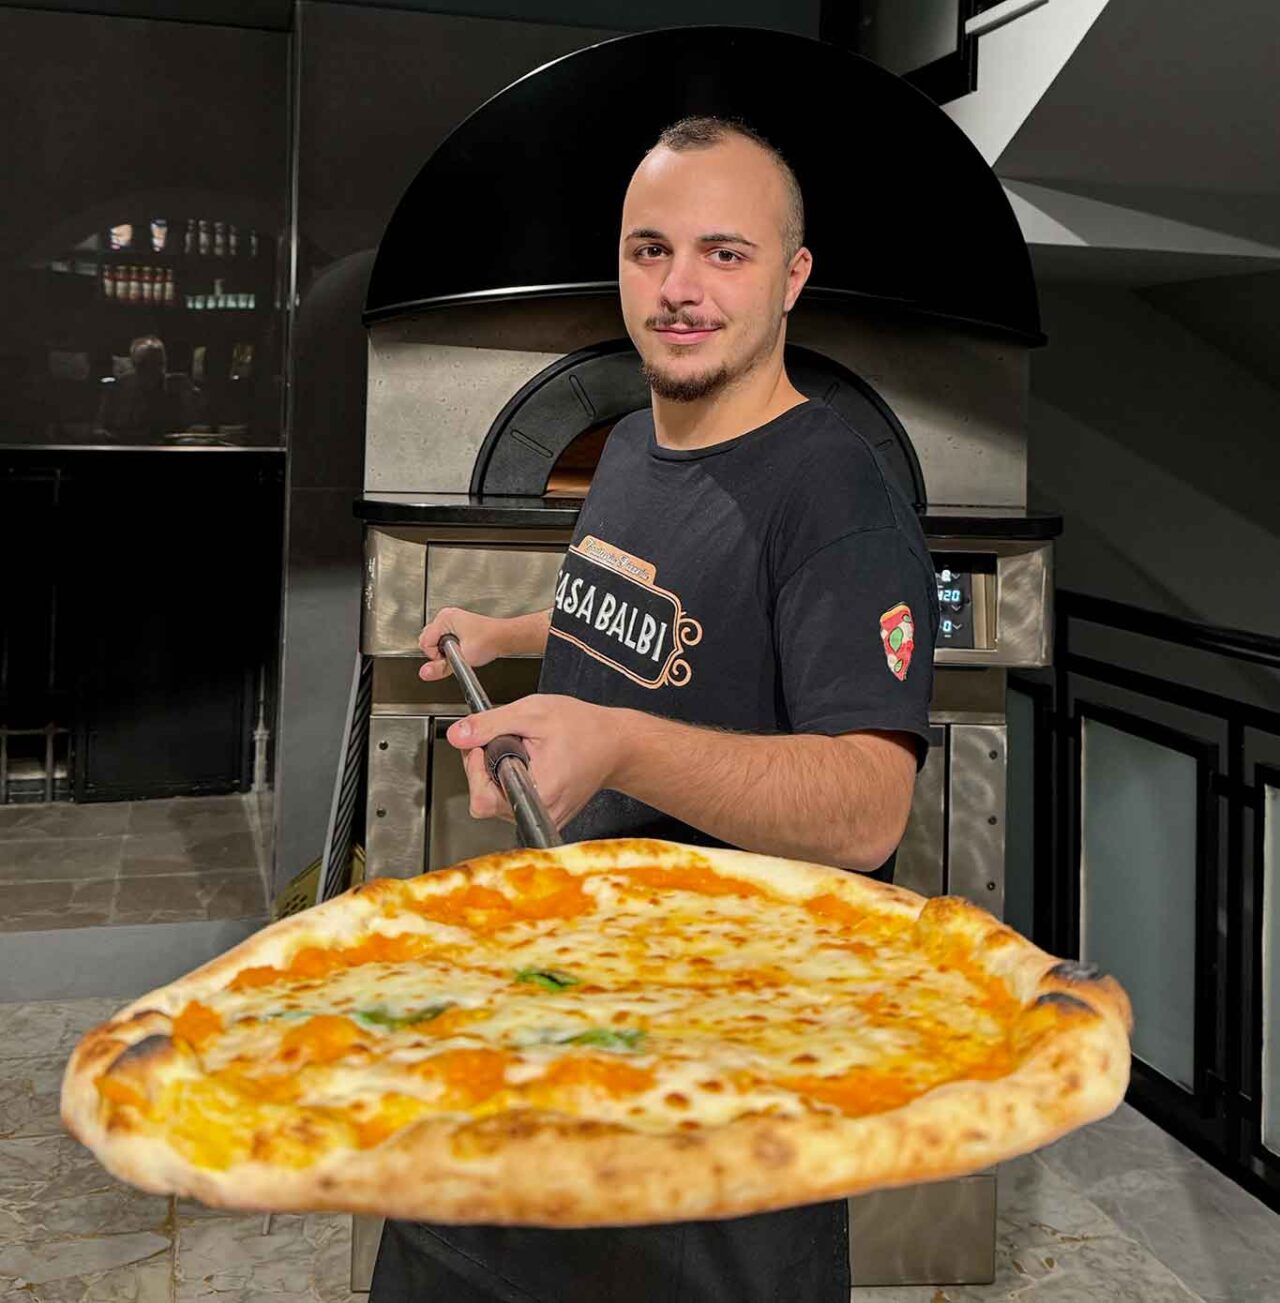 Antonio Saltalamacchia della pizzeria Casa Balbi a Napoli